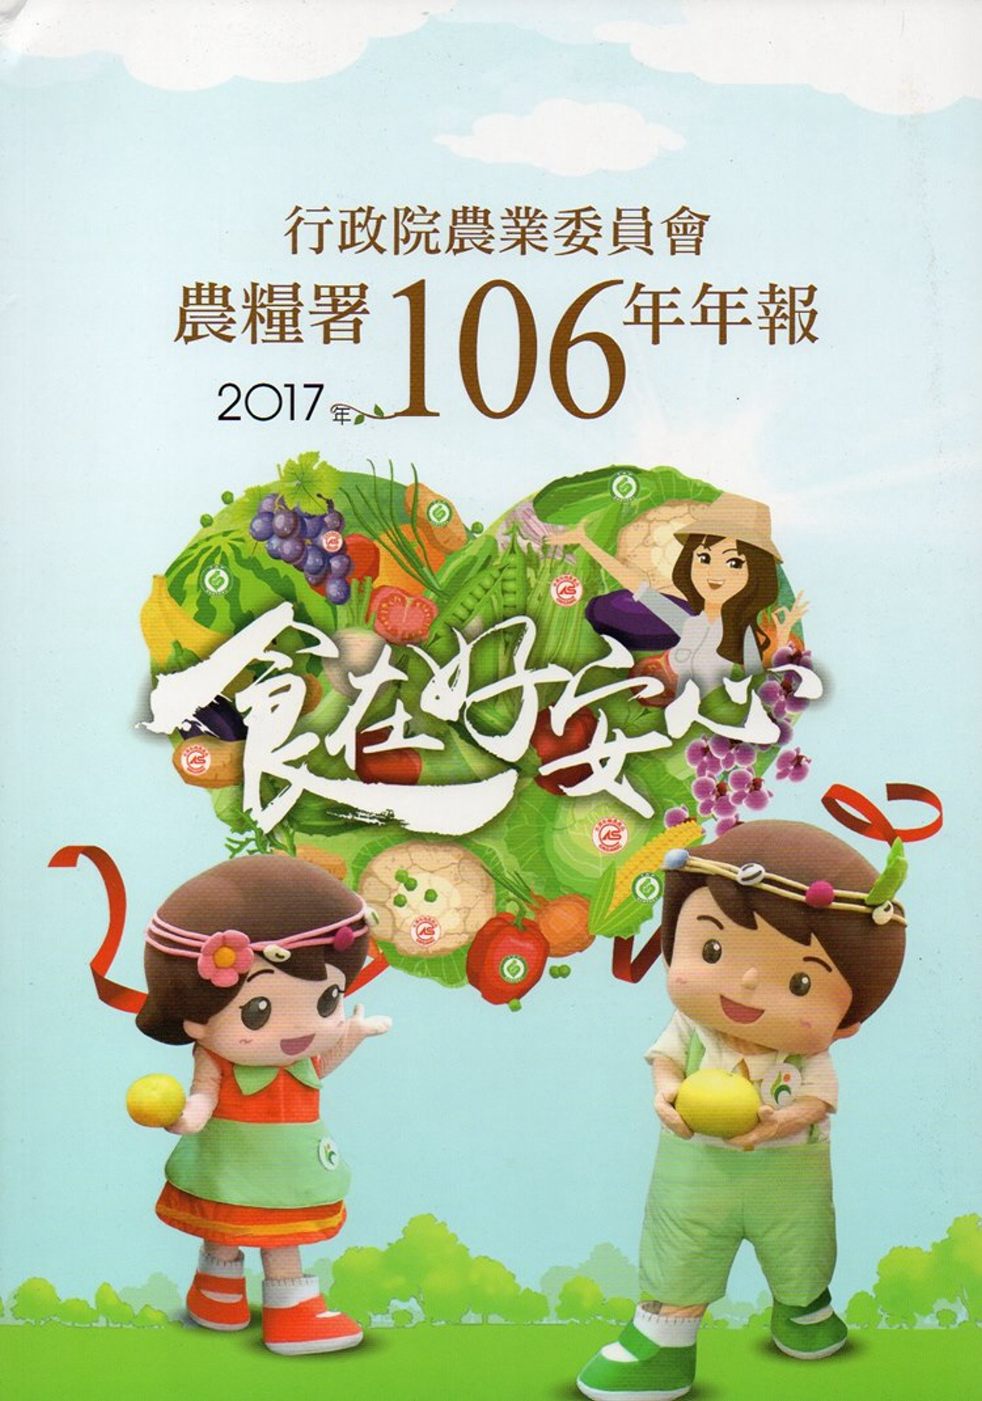 行政院農業委員會農糧署106年年報(2017)